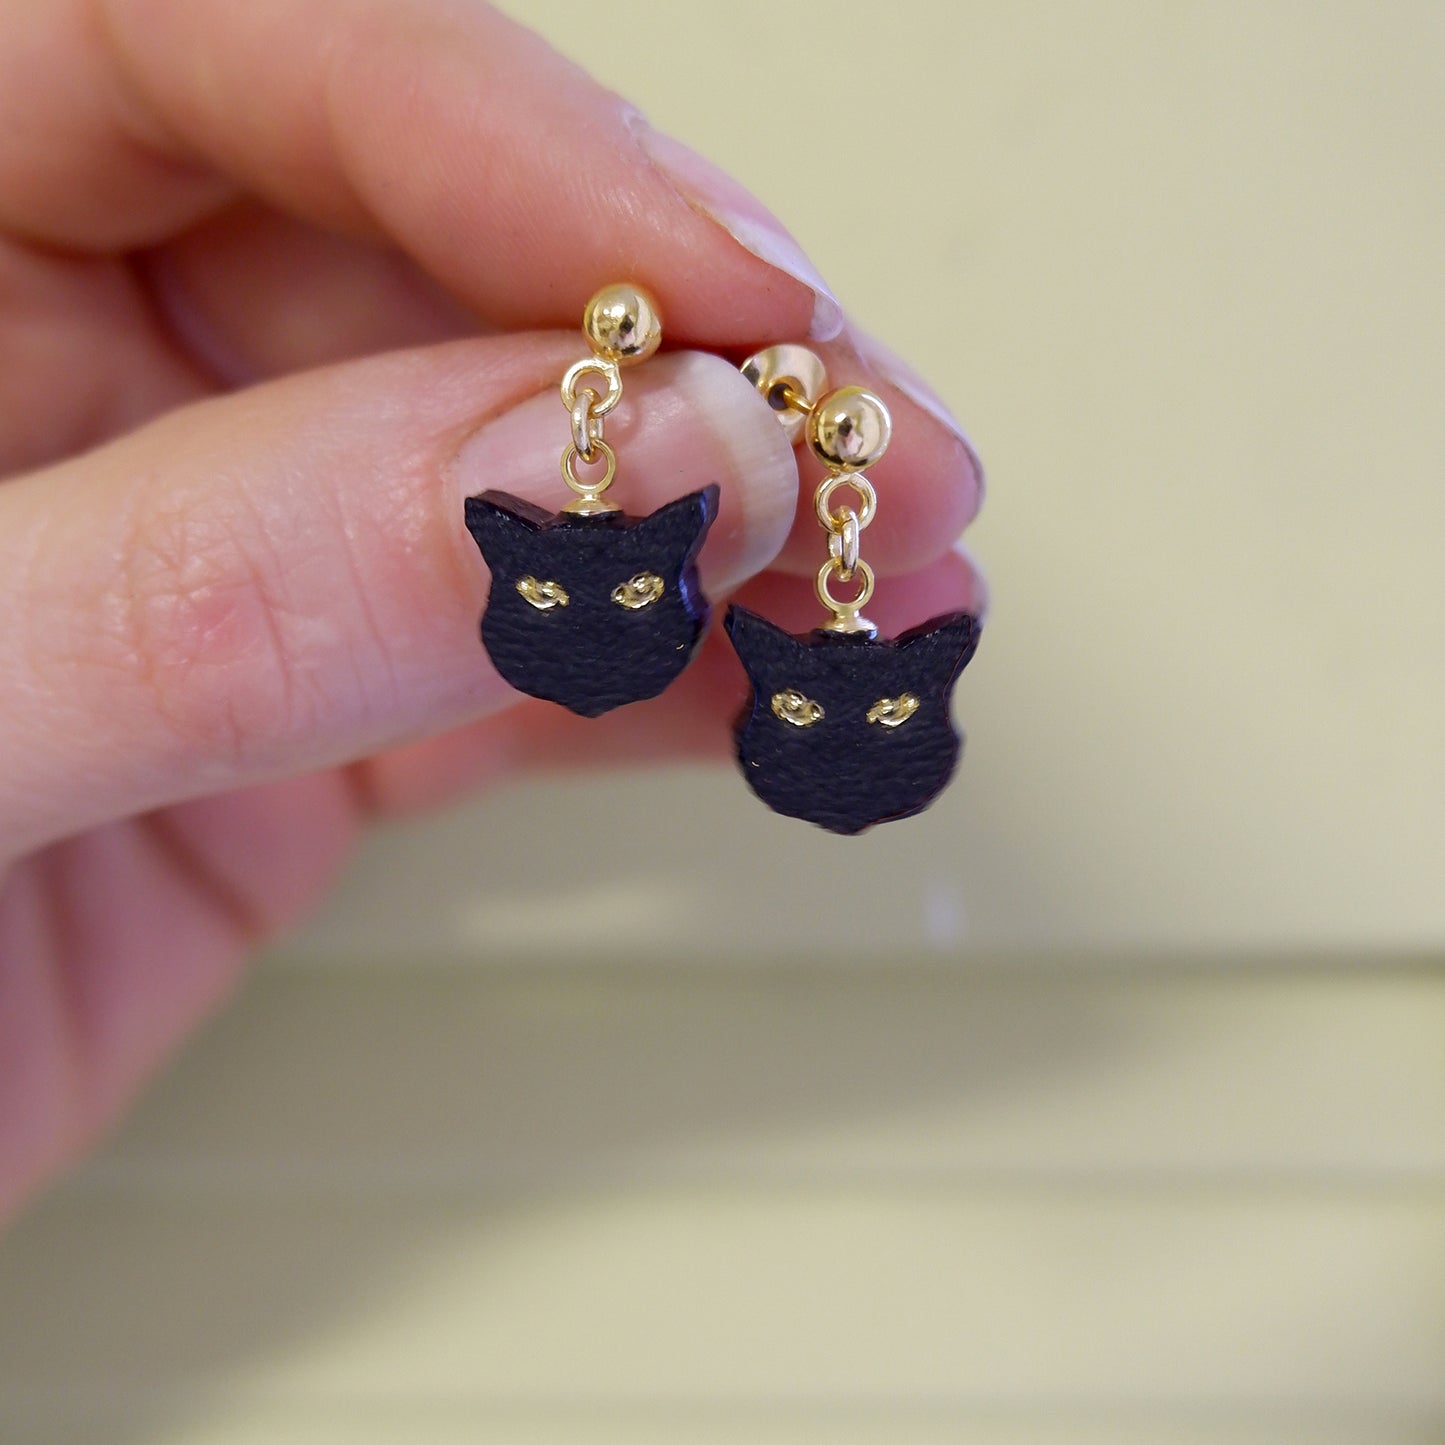 little black cat head charm stud earrings